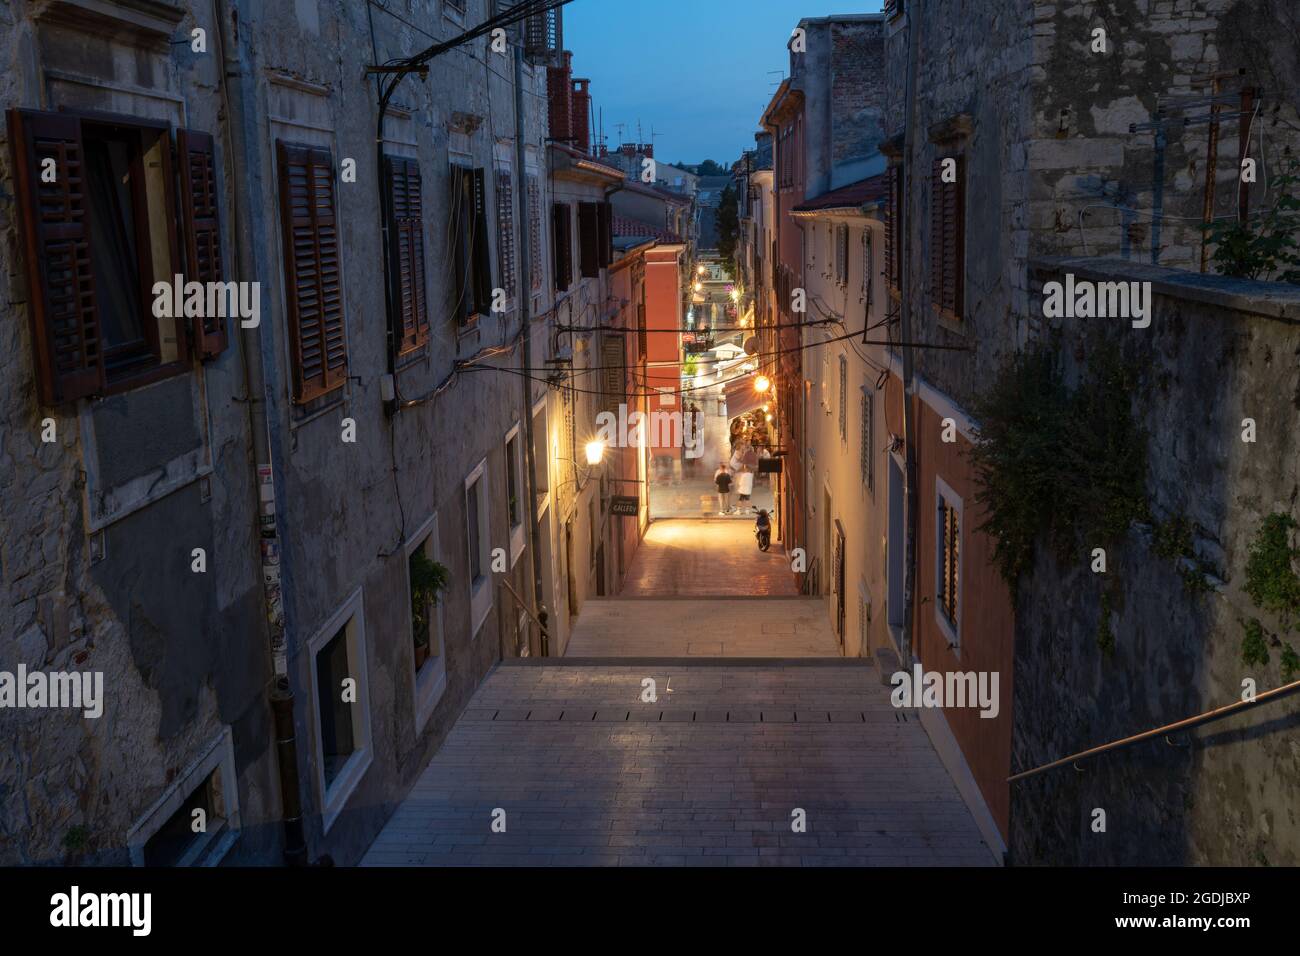 Vue en soirée sur la rue 'de Villeov uspon', au centre de la ville historique de Pula, Croatie. Les rues inférieures sous les escaliers sont éclairées et pleines de touristes. Banque D'Images